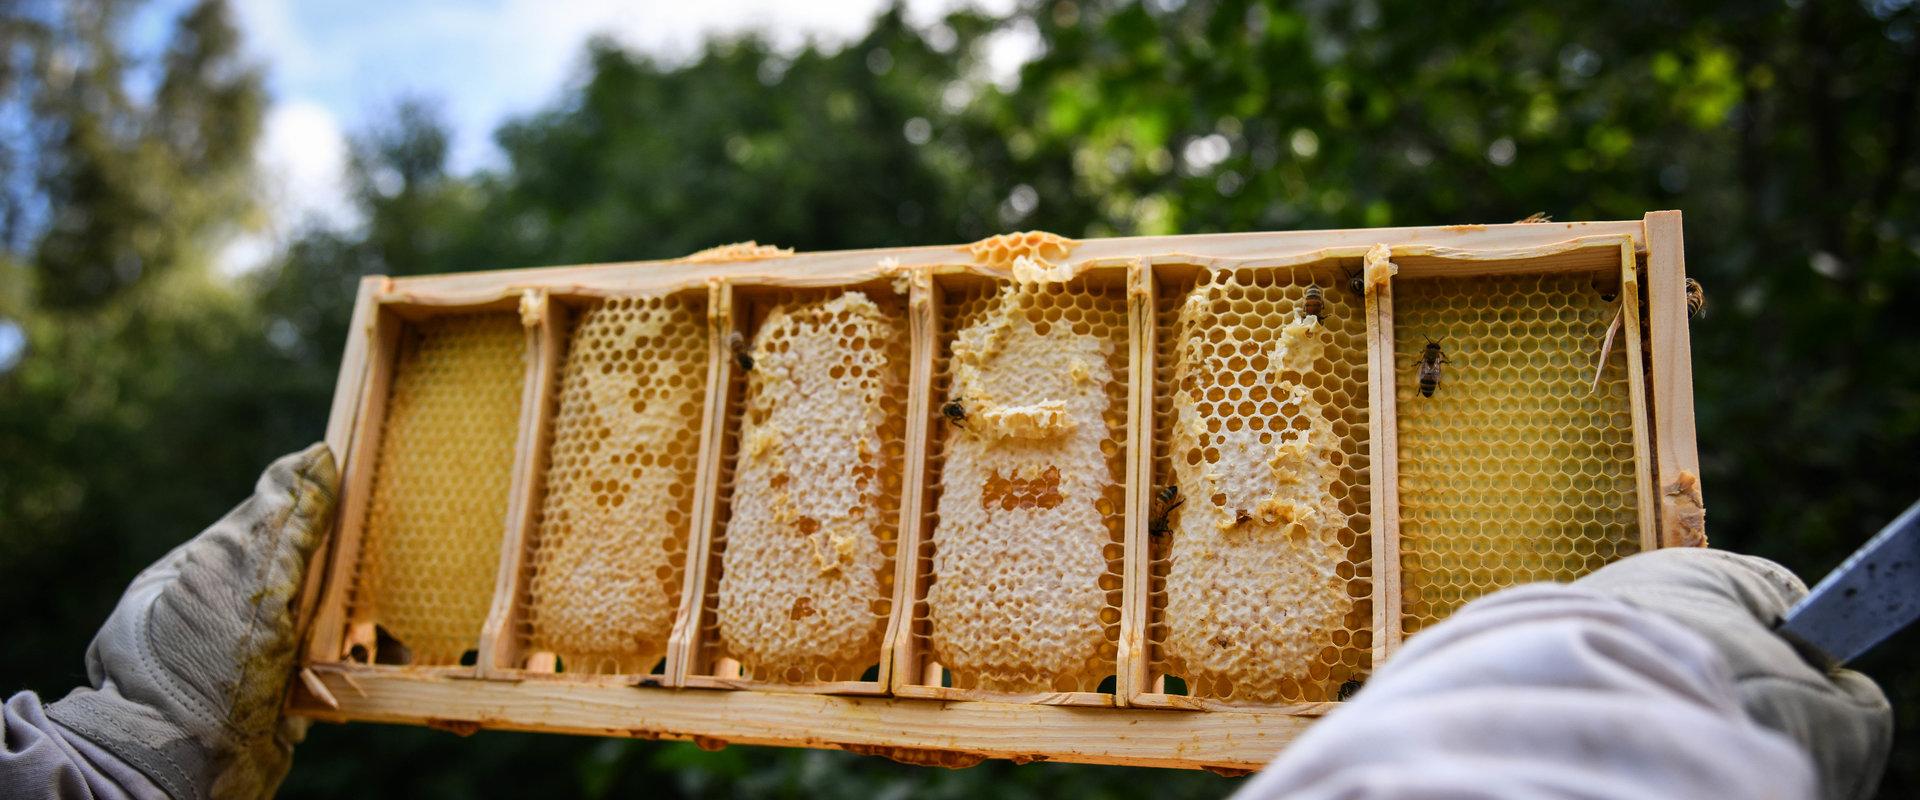 Langsame Momente während eines Besuchs des Bienengartens des Landhofs Tormikadaka